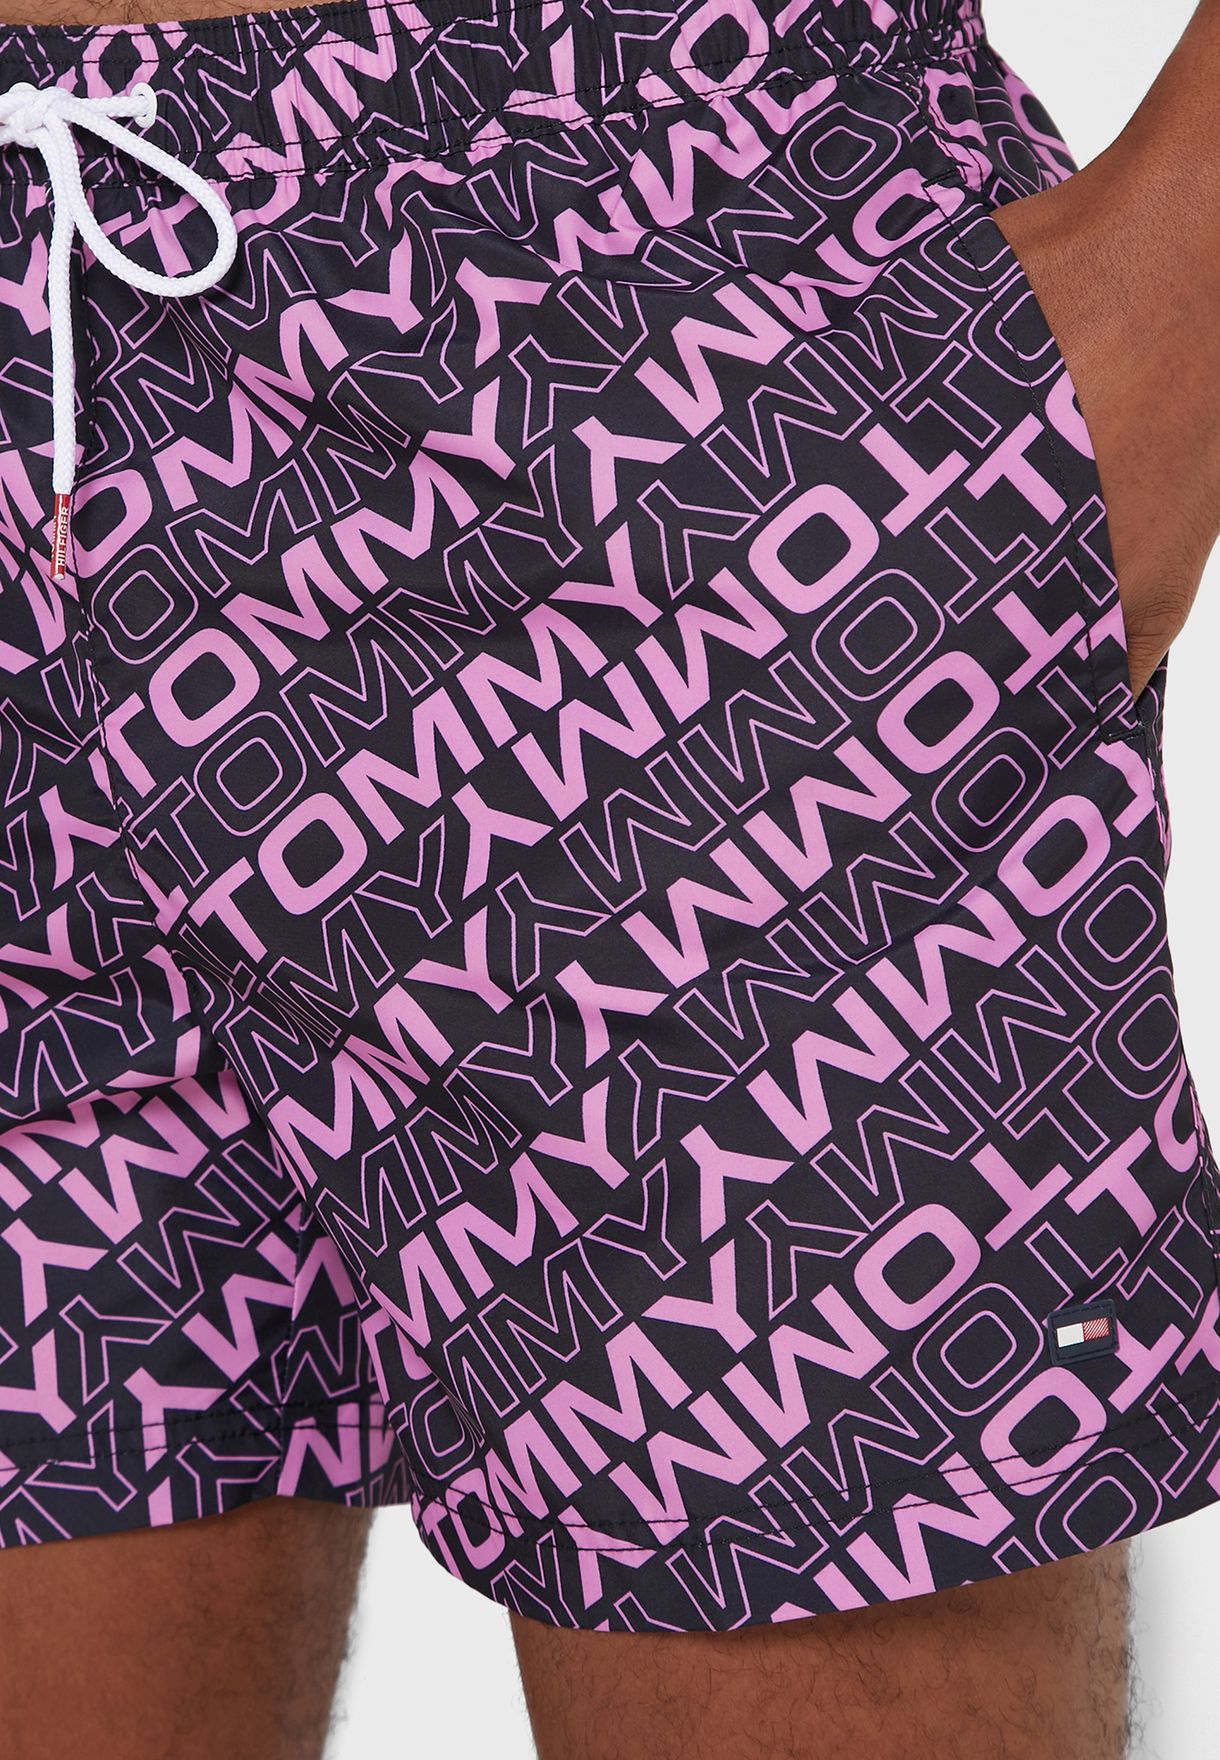 Logo Print Swim Shorts